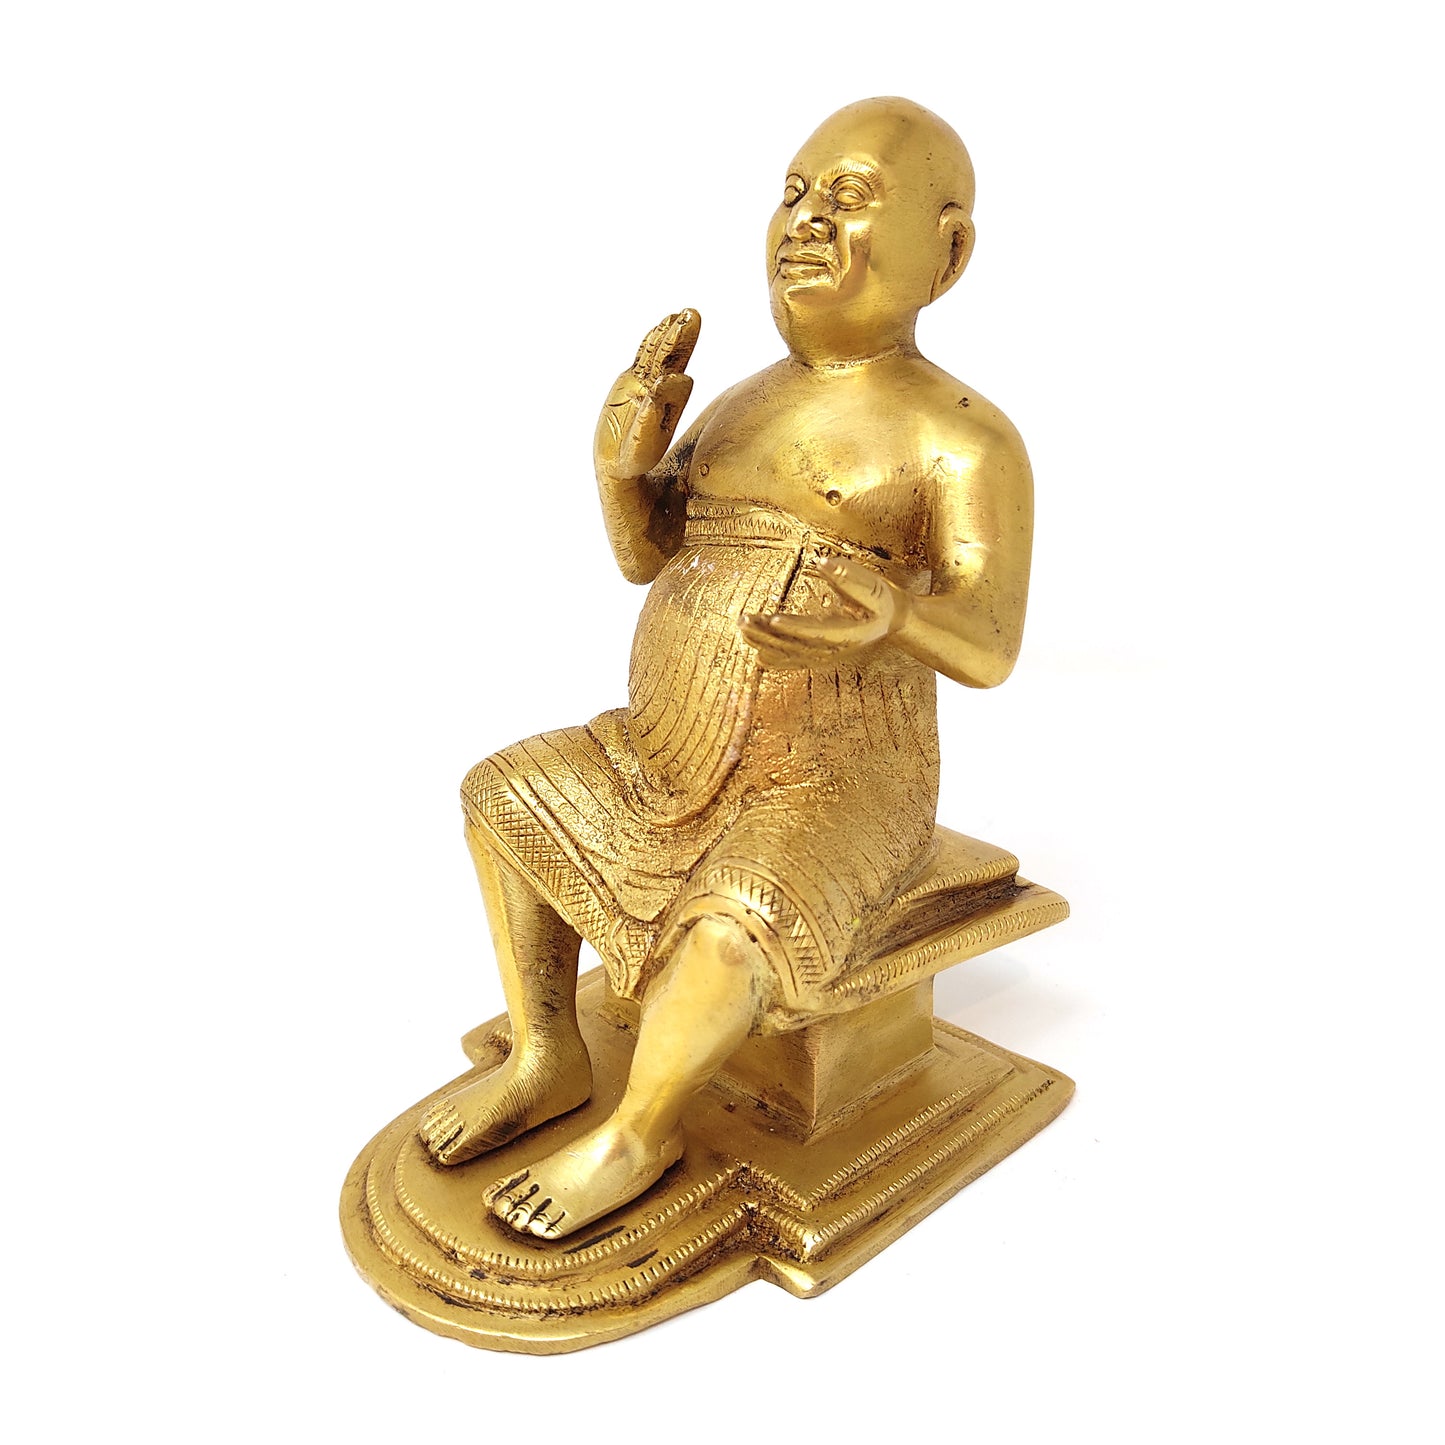 Shivananda Swami India Guru Holy Saint Sivananda Brass Handcrafted Statue 5.25"